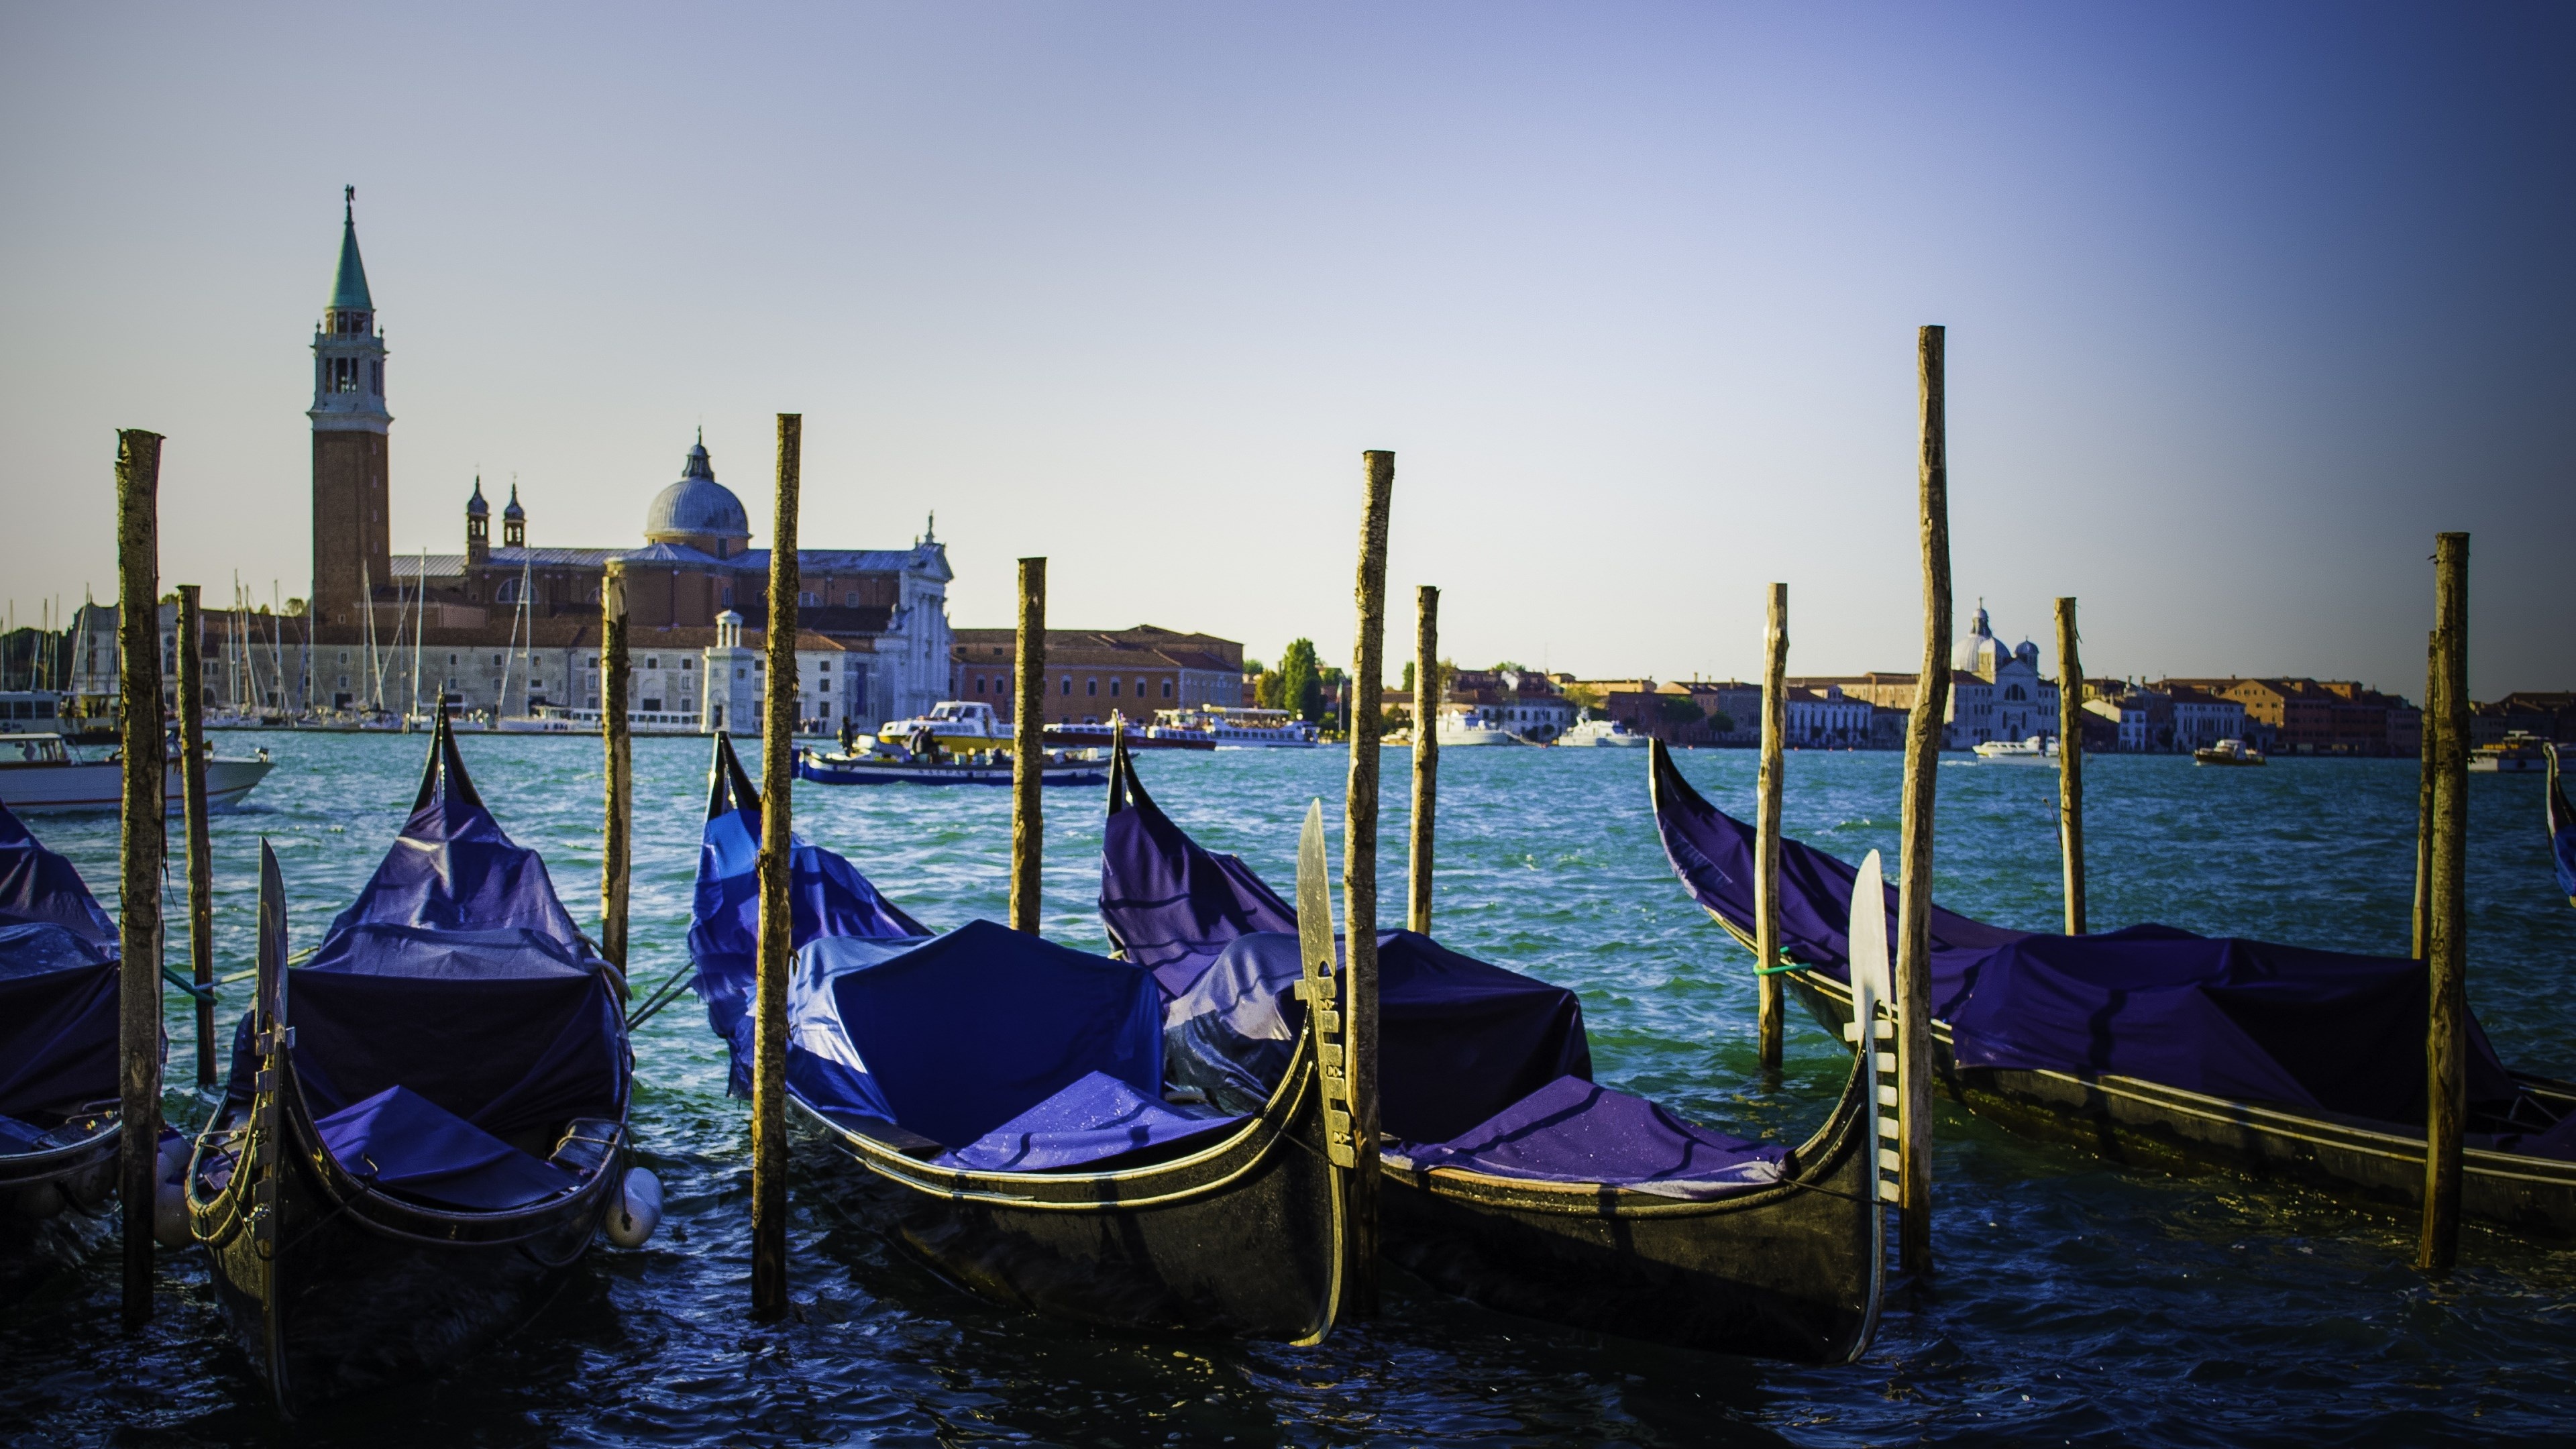 Gondola: A traditional, flat-bottomed Venetian rowing boat, Channel. 3840x2160 4K Wallpaper.